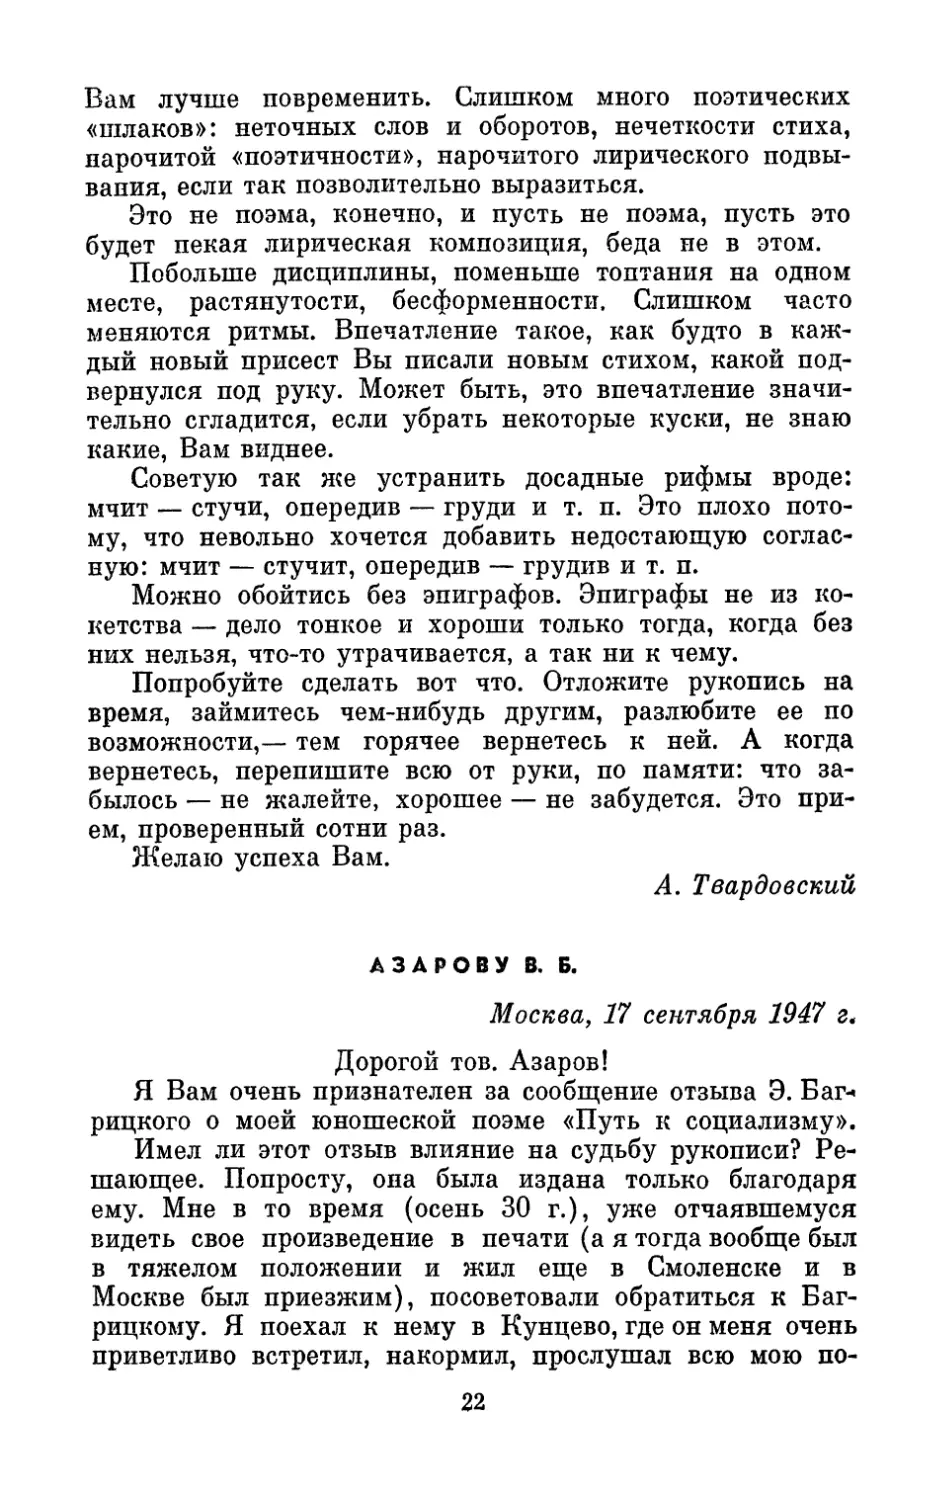 Азарову В. Б., 17 сентября 1947 г.